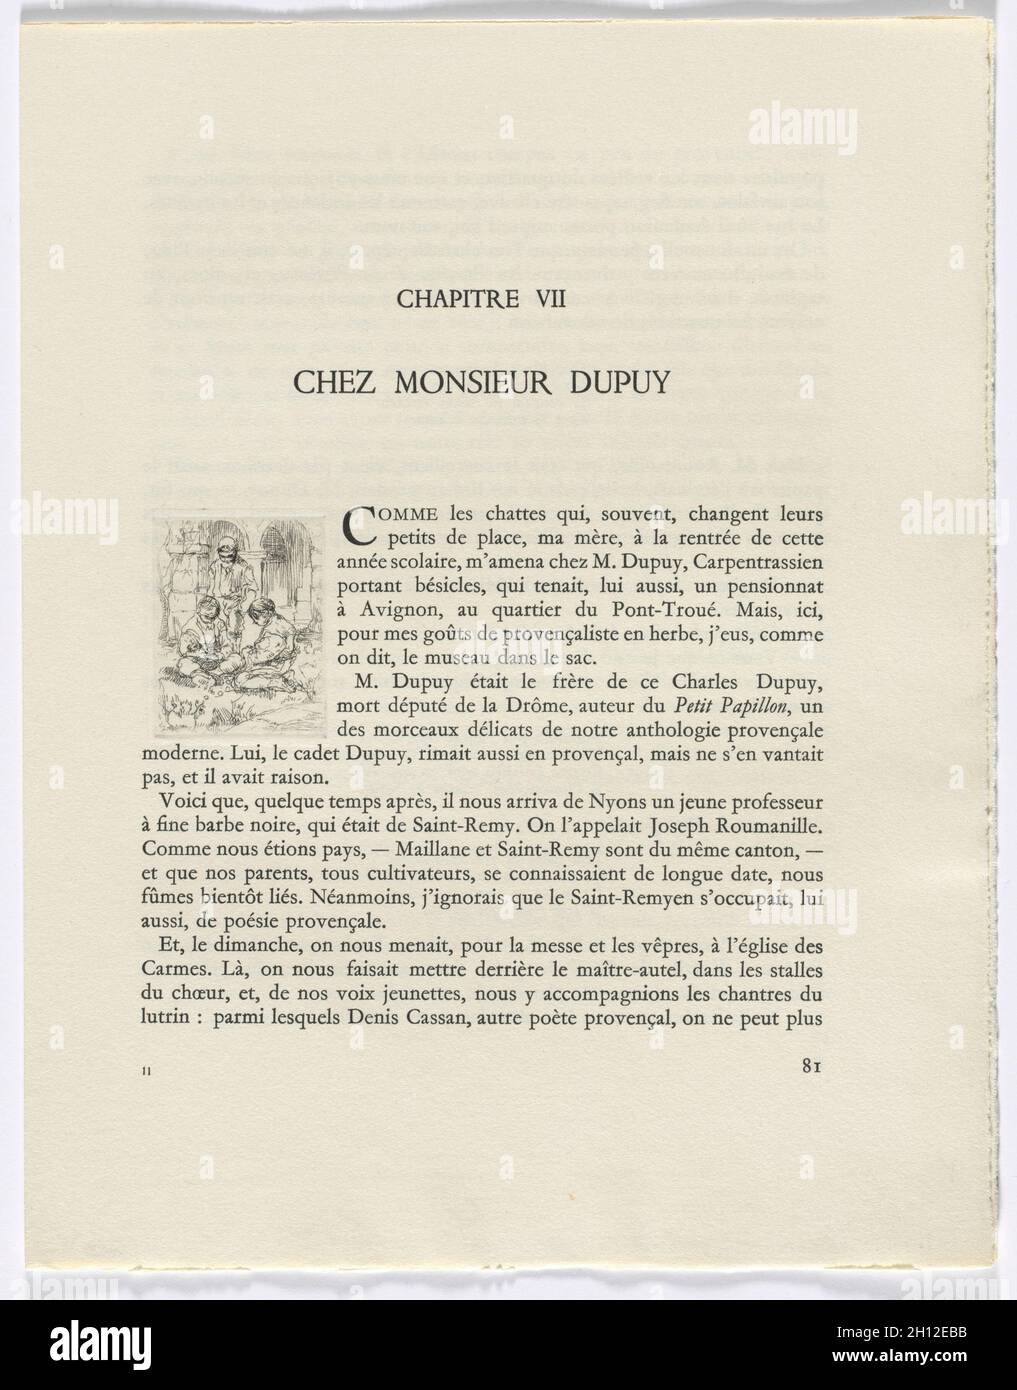 Frédéric Mistral: Mémoires et Recits di Frédéric Mistral: Tre cifre (pagina 81), 1937. Auguste Brouet (francese, 1872-1941). Incisioni; totale: 28.5 x 22.2 x 4.4 cm (11 1/4 x 8 3/4 x 1 3/4 poll.). Foto Stock